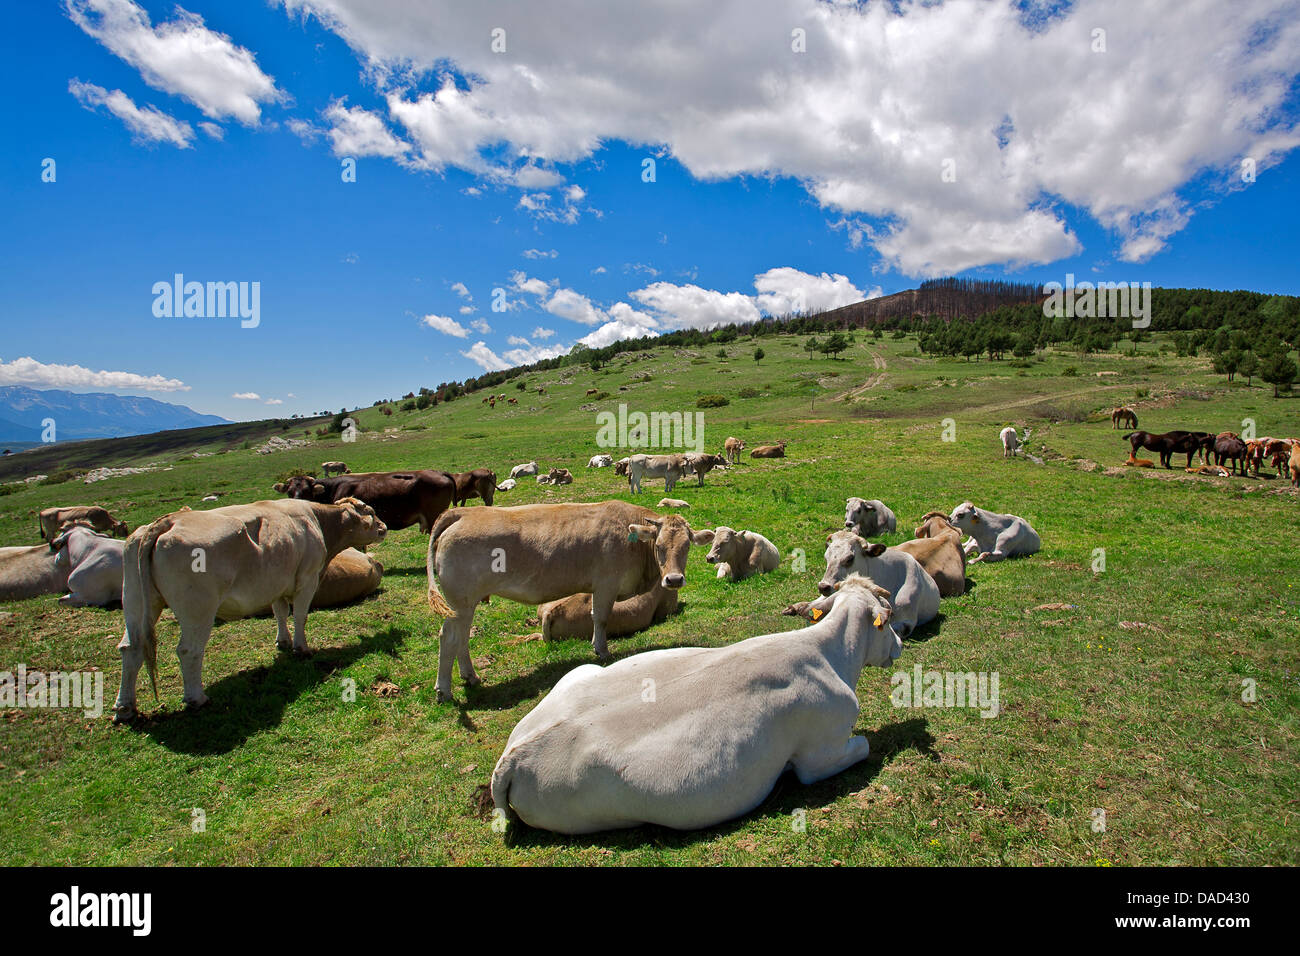 Troupeau de vaches qui paissent et relaxant dans une prairie. Pyrénées. Catalunya. Espagne Banque D'Images